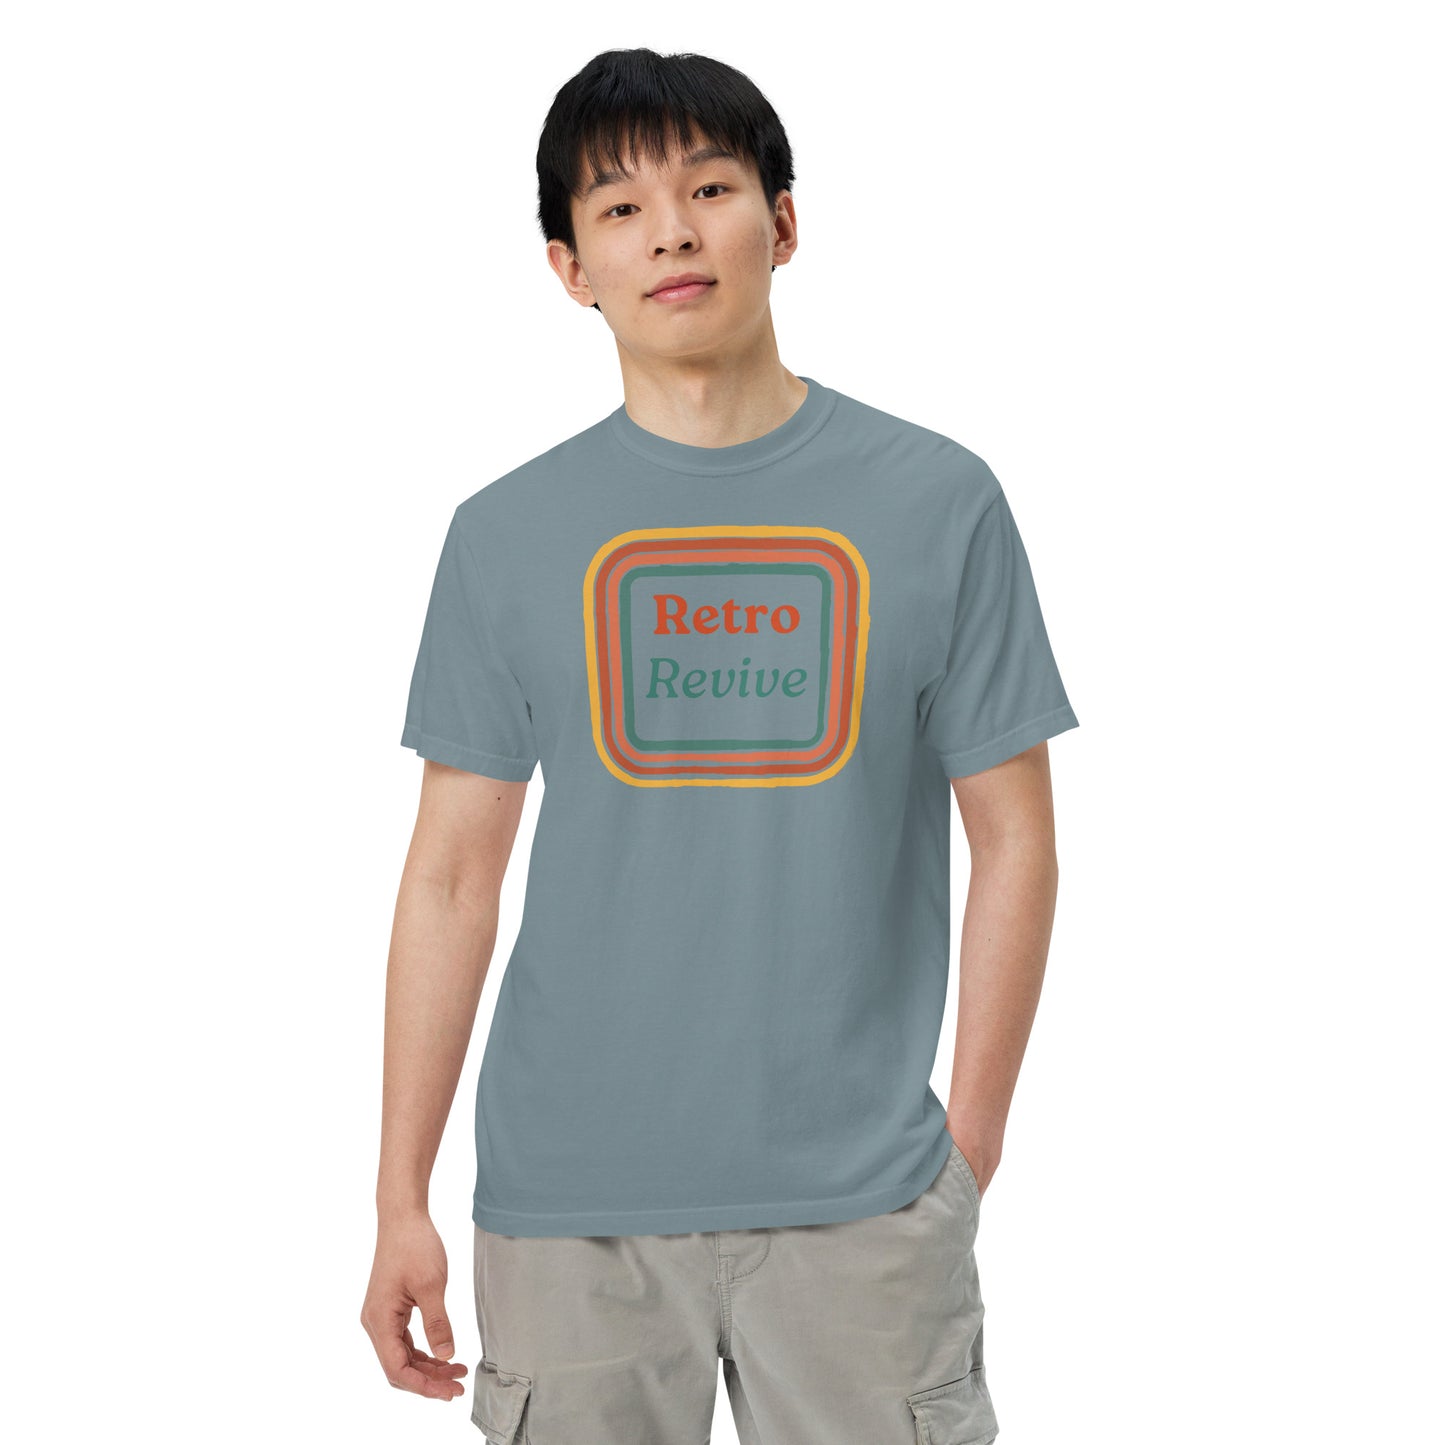 Retro Revive 70's Square Design Men’s Comforts Color T-Shirt